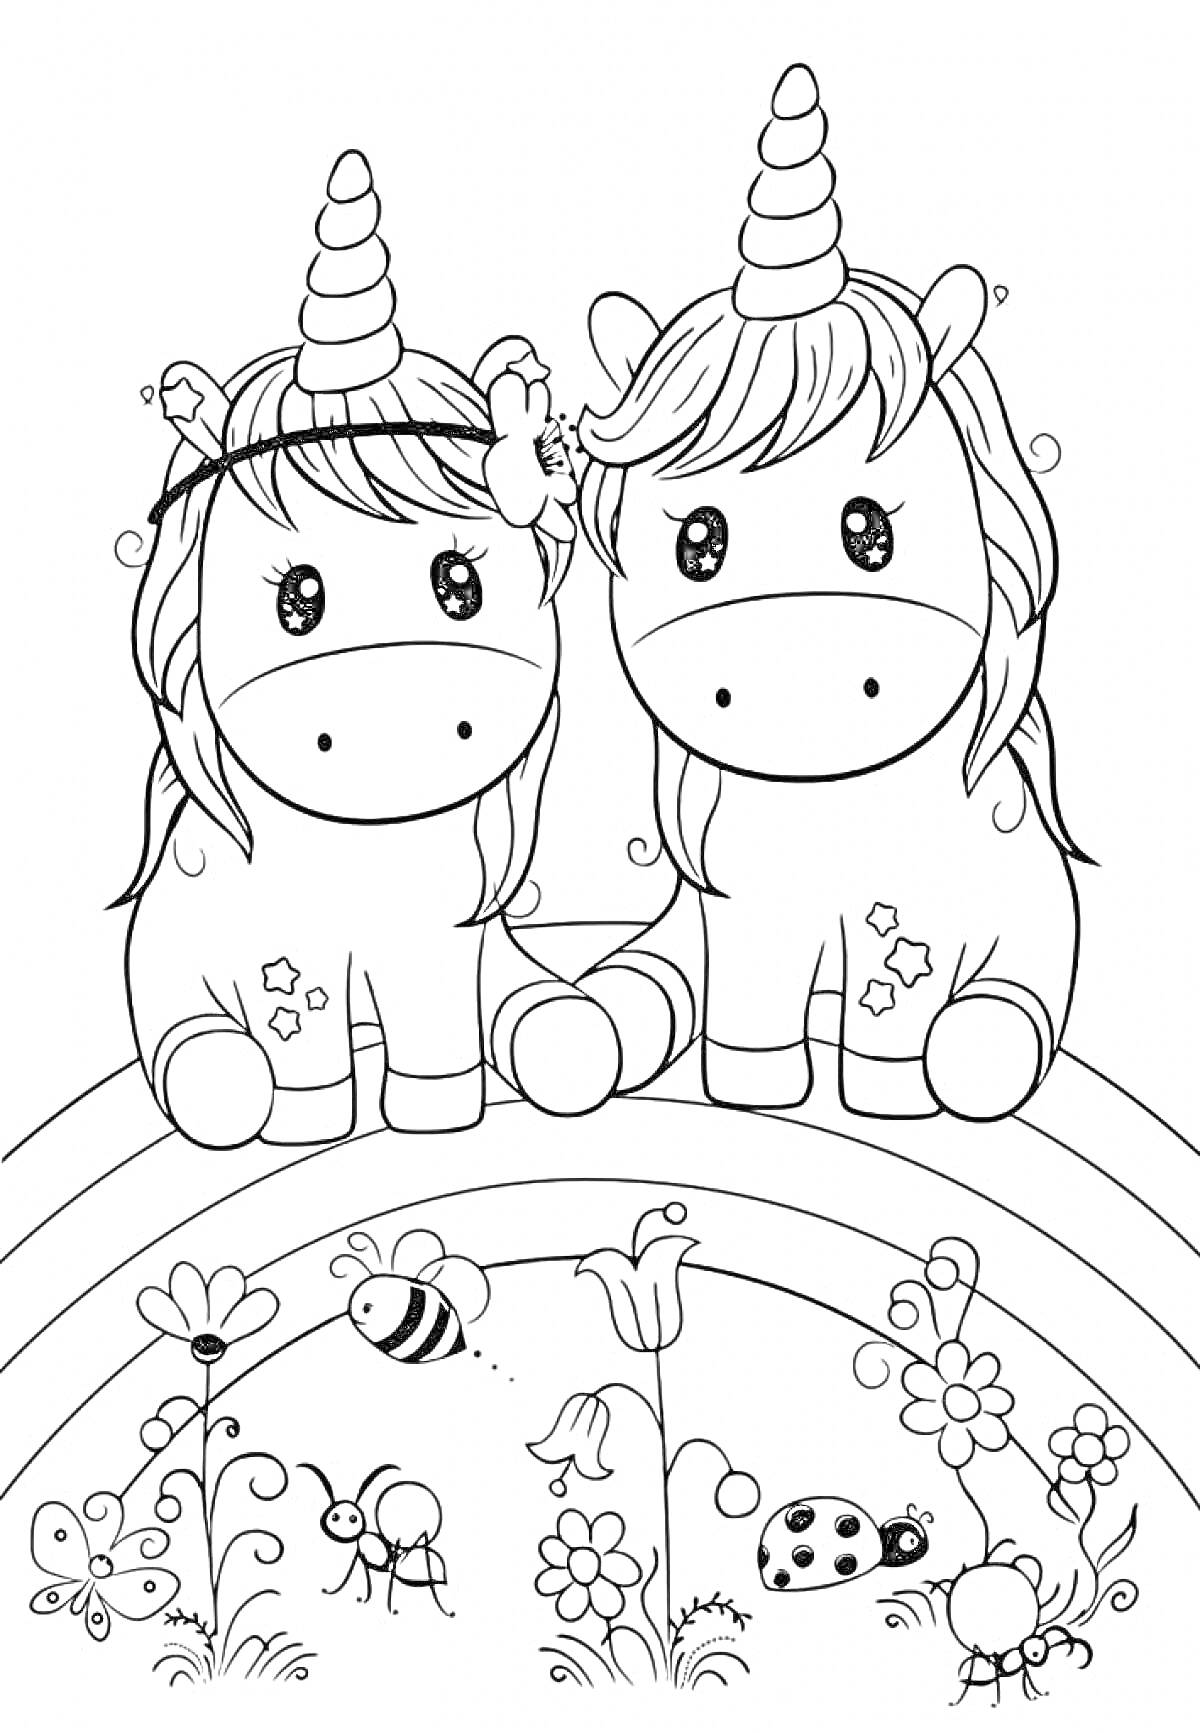 Раскраска два милых единорога с цветами на голове, сидящие на радуге, с цветами, божьей коровкой и пчелой на переднем плане